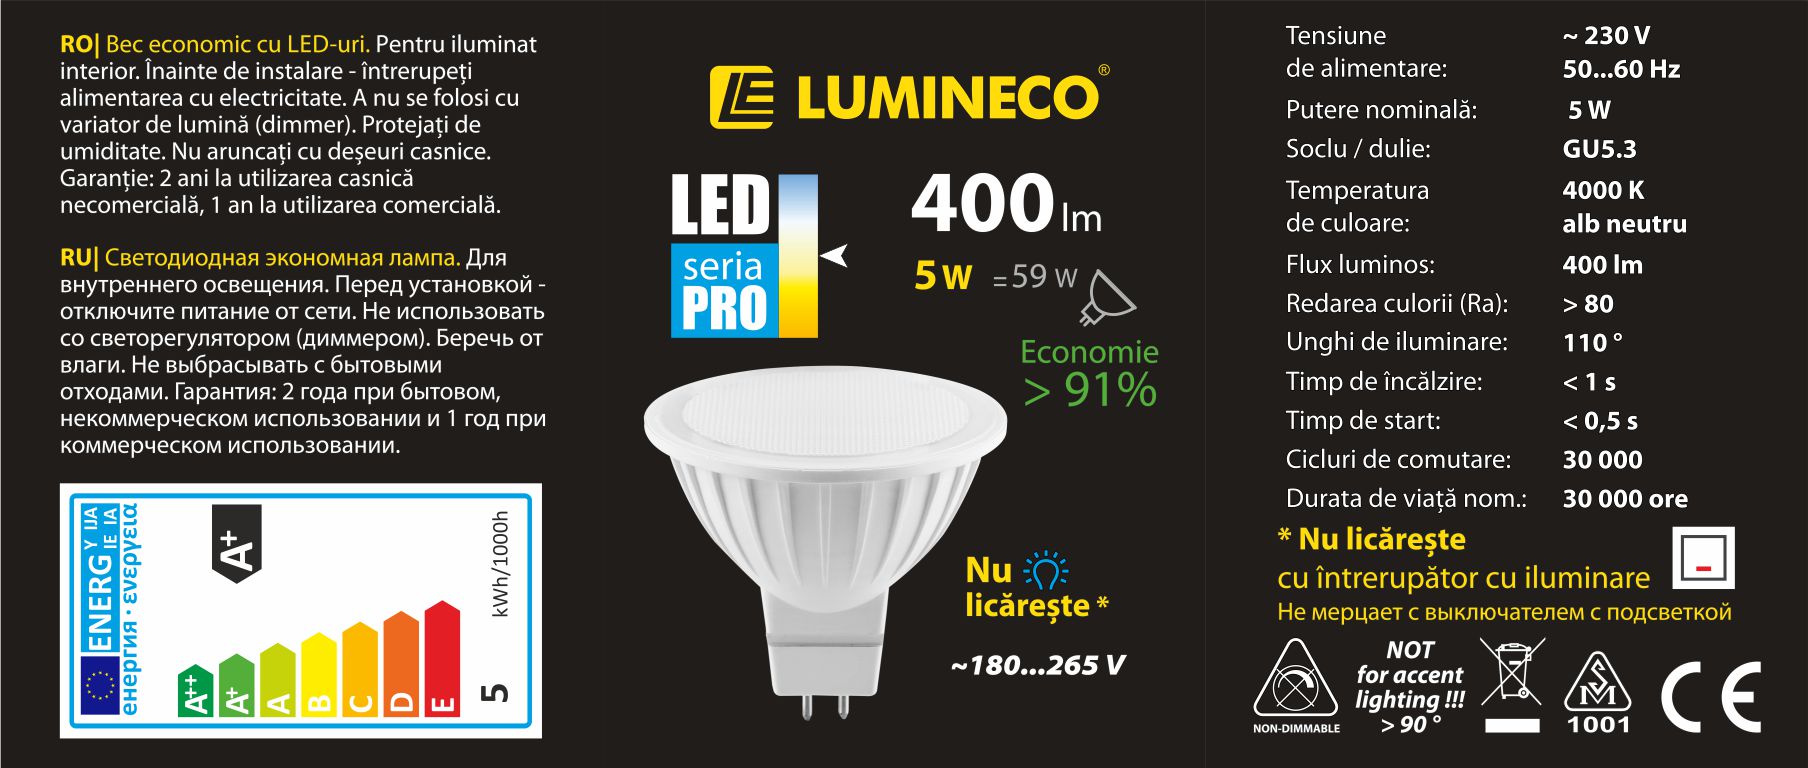 10107005, Светодиодная лампа LED PRO MR16 5W GU5.3 4000K,
Светодиодная лампа LED PRO MR16 5W GU5.3 4000K
Мощность (Вт) 5
Эквивал. традиц. (Вт) 59
Напряжение (В) 230V AC
Цветовая температура (K) 4000K
Цвет свечения белый нейтральный
Световой поток (Лм) 400
Индекс цветопередачи (Ra) 80
Угол рассеивания(°) 110
Цоколь GU5.3
Материал корпуса PC+ALU
Цвет корпуса белый
Время разогрева (с) 1
Время запуска (с) 0.5
Кол-во циклов вкл./ выкл. 30000
Световой поток после 6000 ч (%) 80
Срок службы (ч) 30000
Длина (мм) 48
Диаметр (мм) 50
Совместимость со светорегулятором Нет
Гарантия (мес.) * при бытовом некоммерческом использовании	24